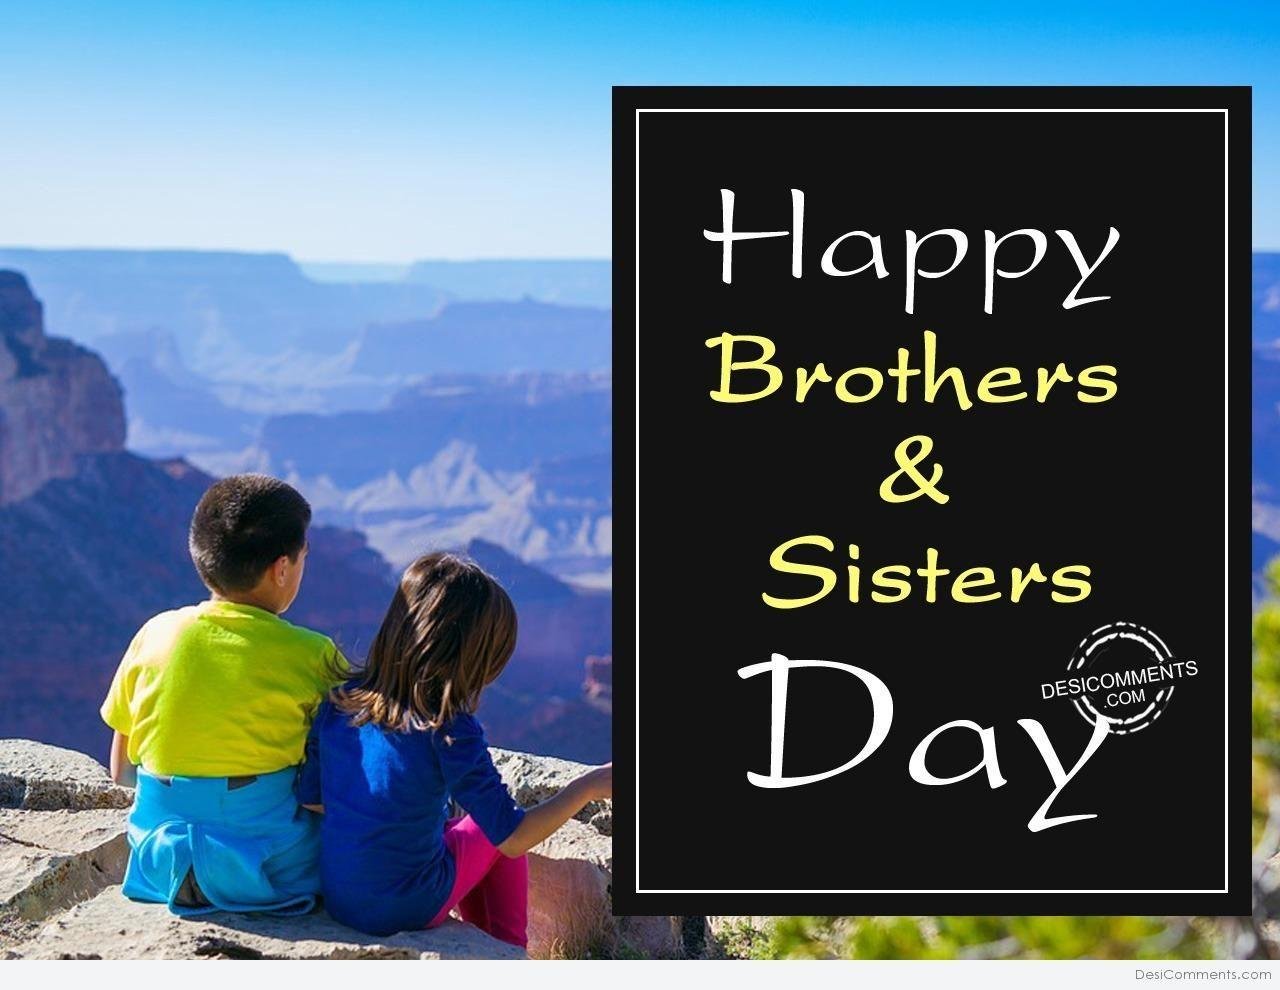 10 братьев и 1 сестра. День братьев и сестер. Европейский день братьев и сестер. С праздником братьев и сестер. День братьев.